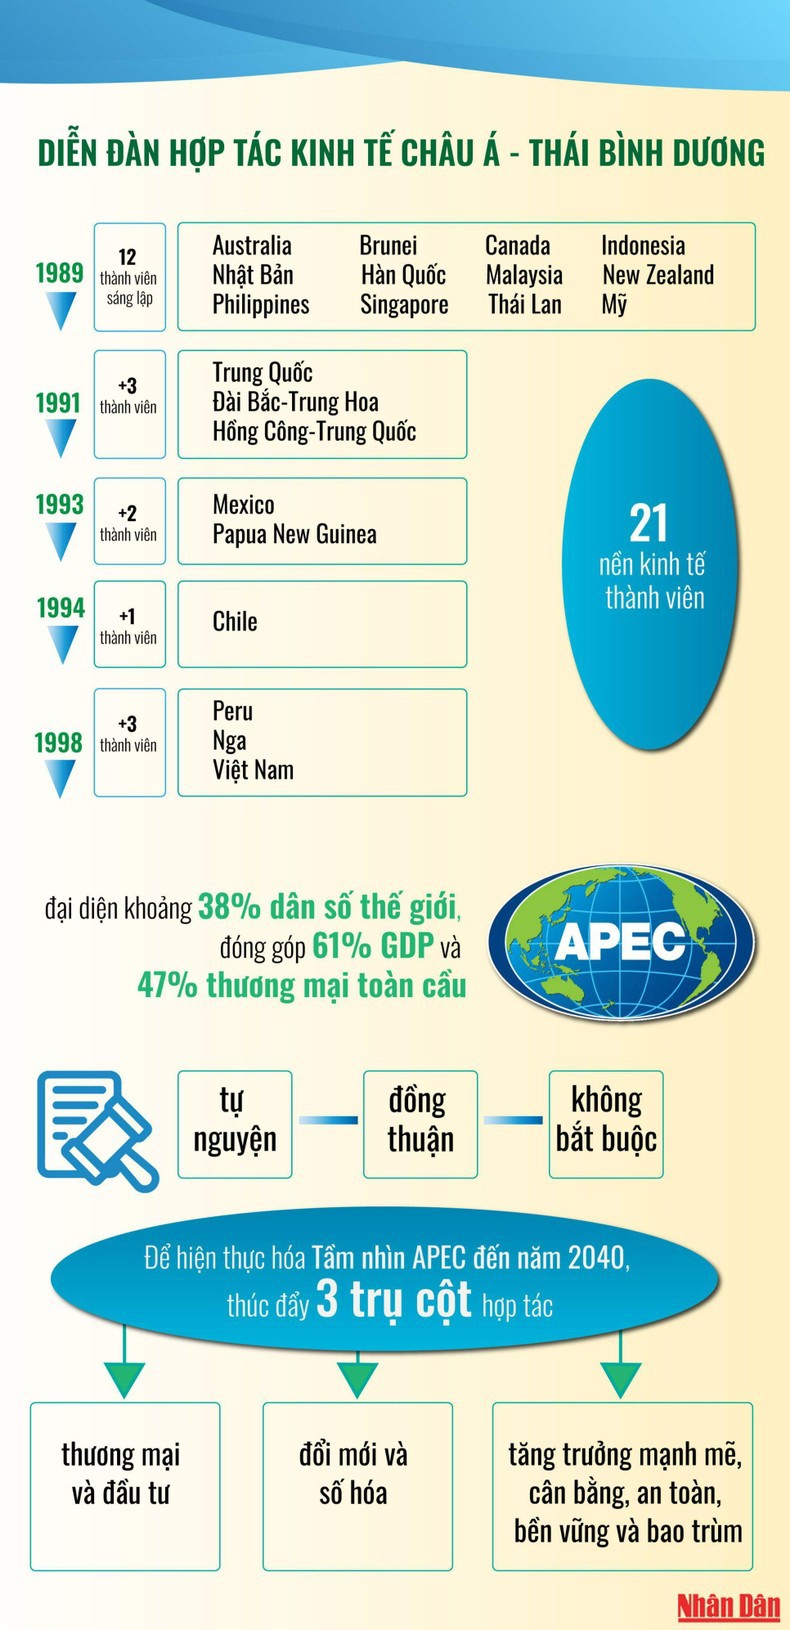 APEC thúc đẩy hội nhập và phát triển - Ảnh 1